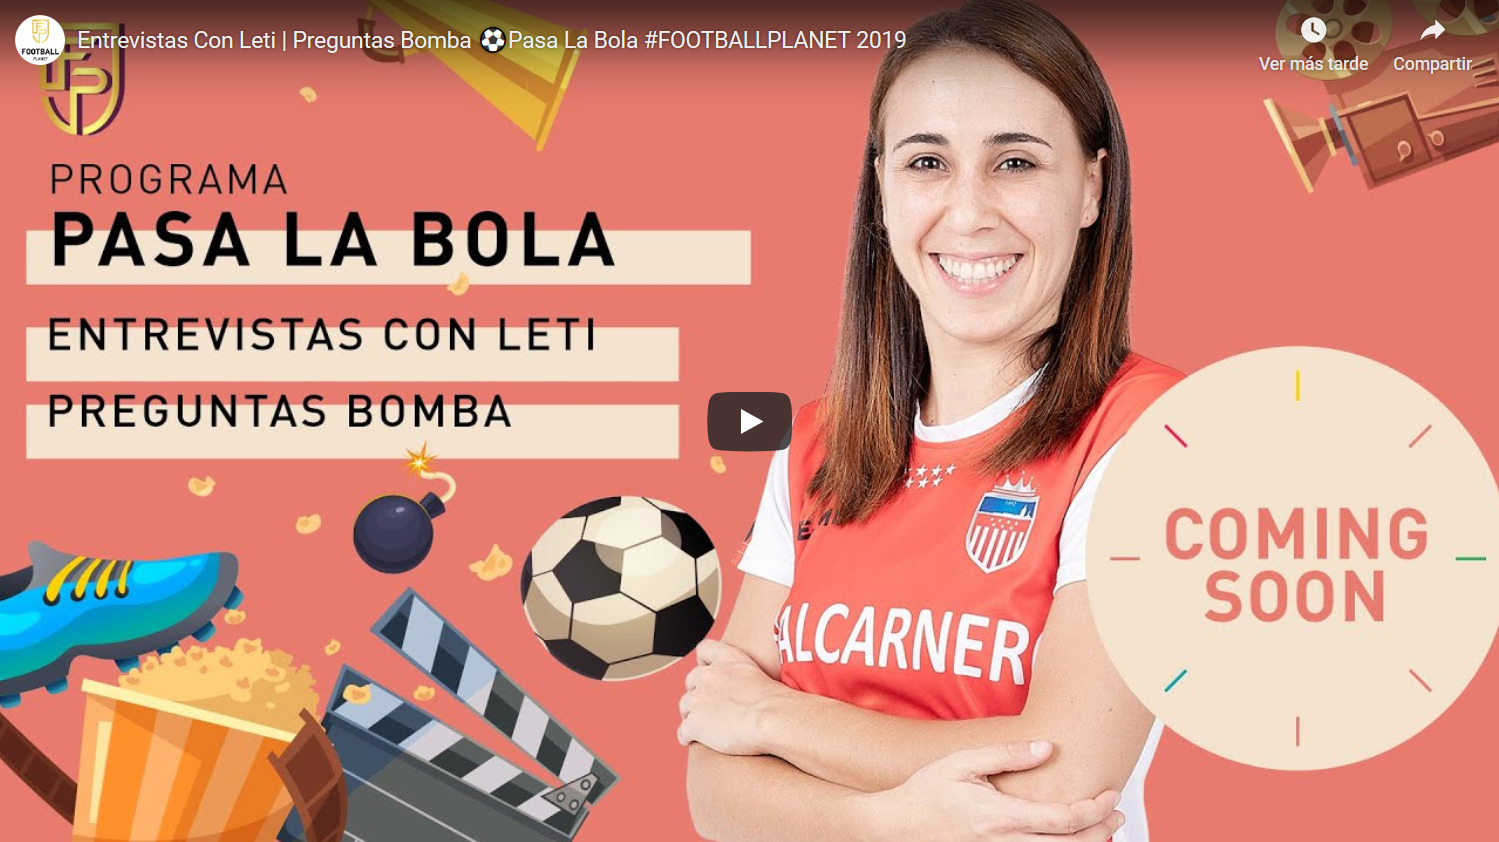 Entrevista a Vane Sotelo en el espacio "Pasa la Bola" del Canal Football Planet